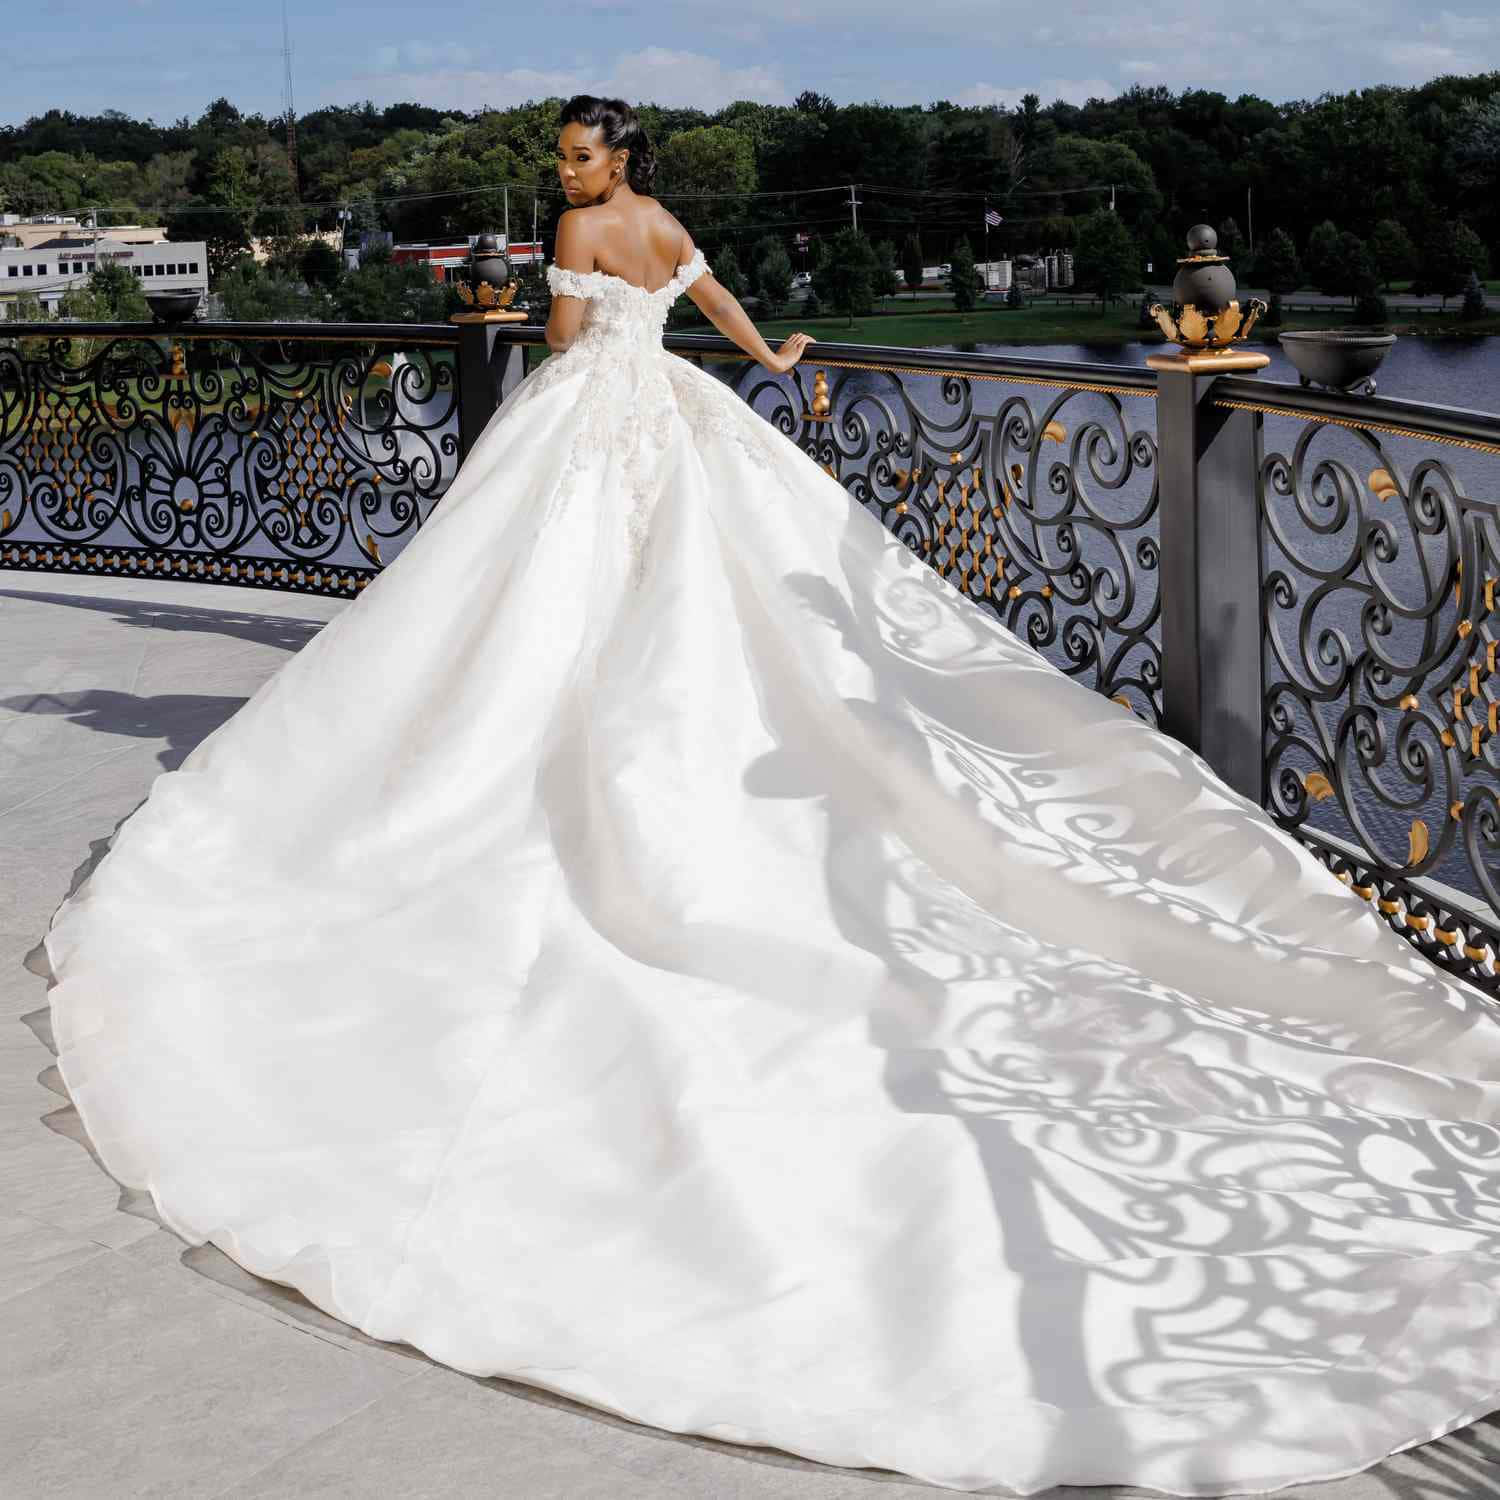 Gorgeous White&Lace Wedding Dress Wallpaper